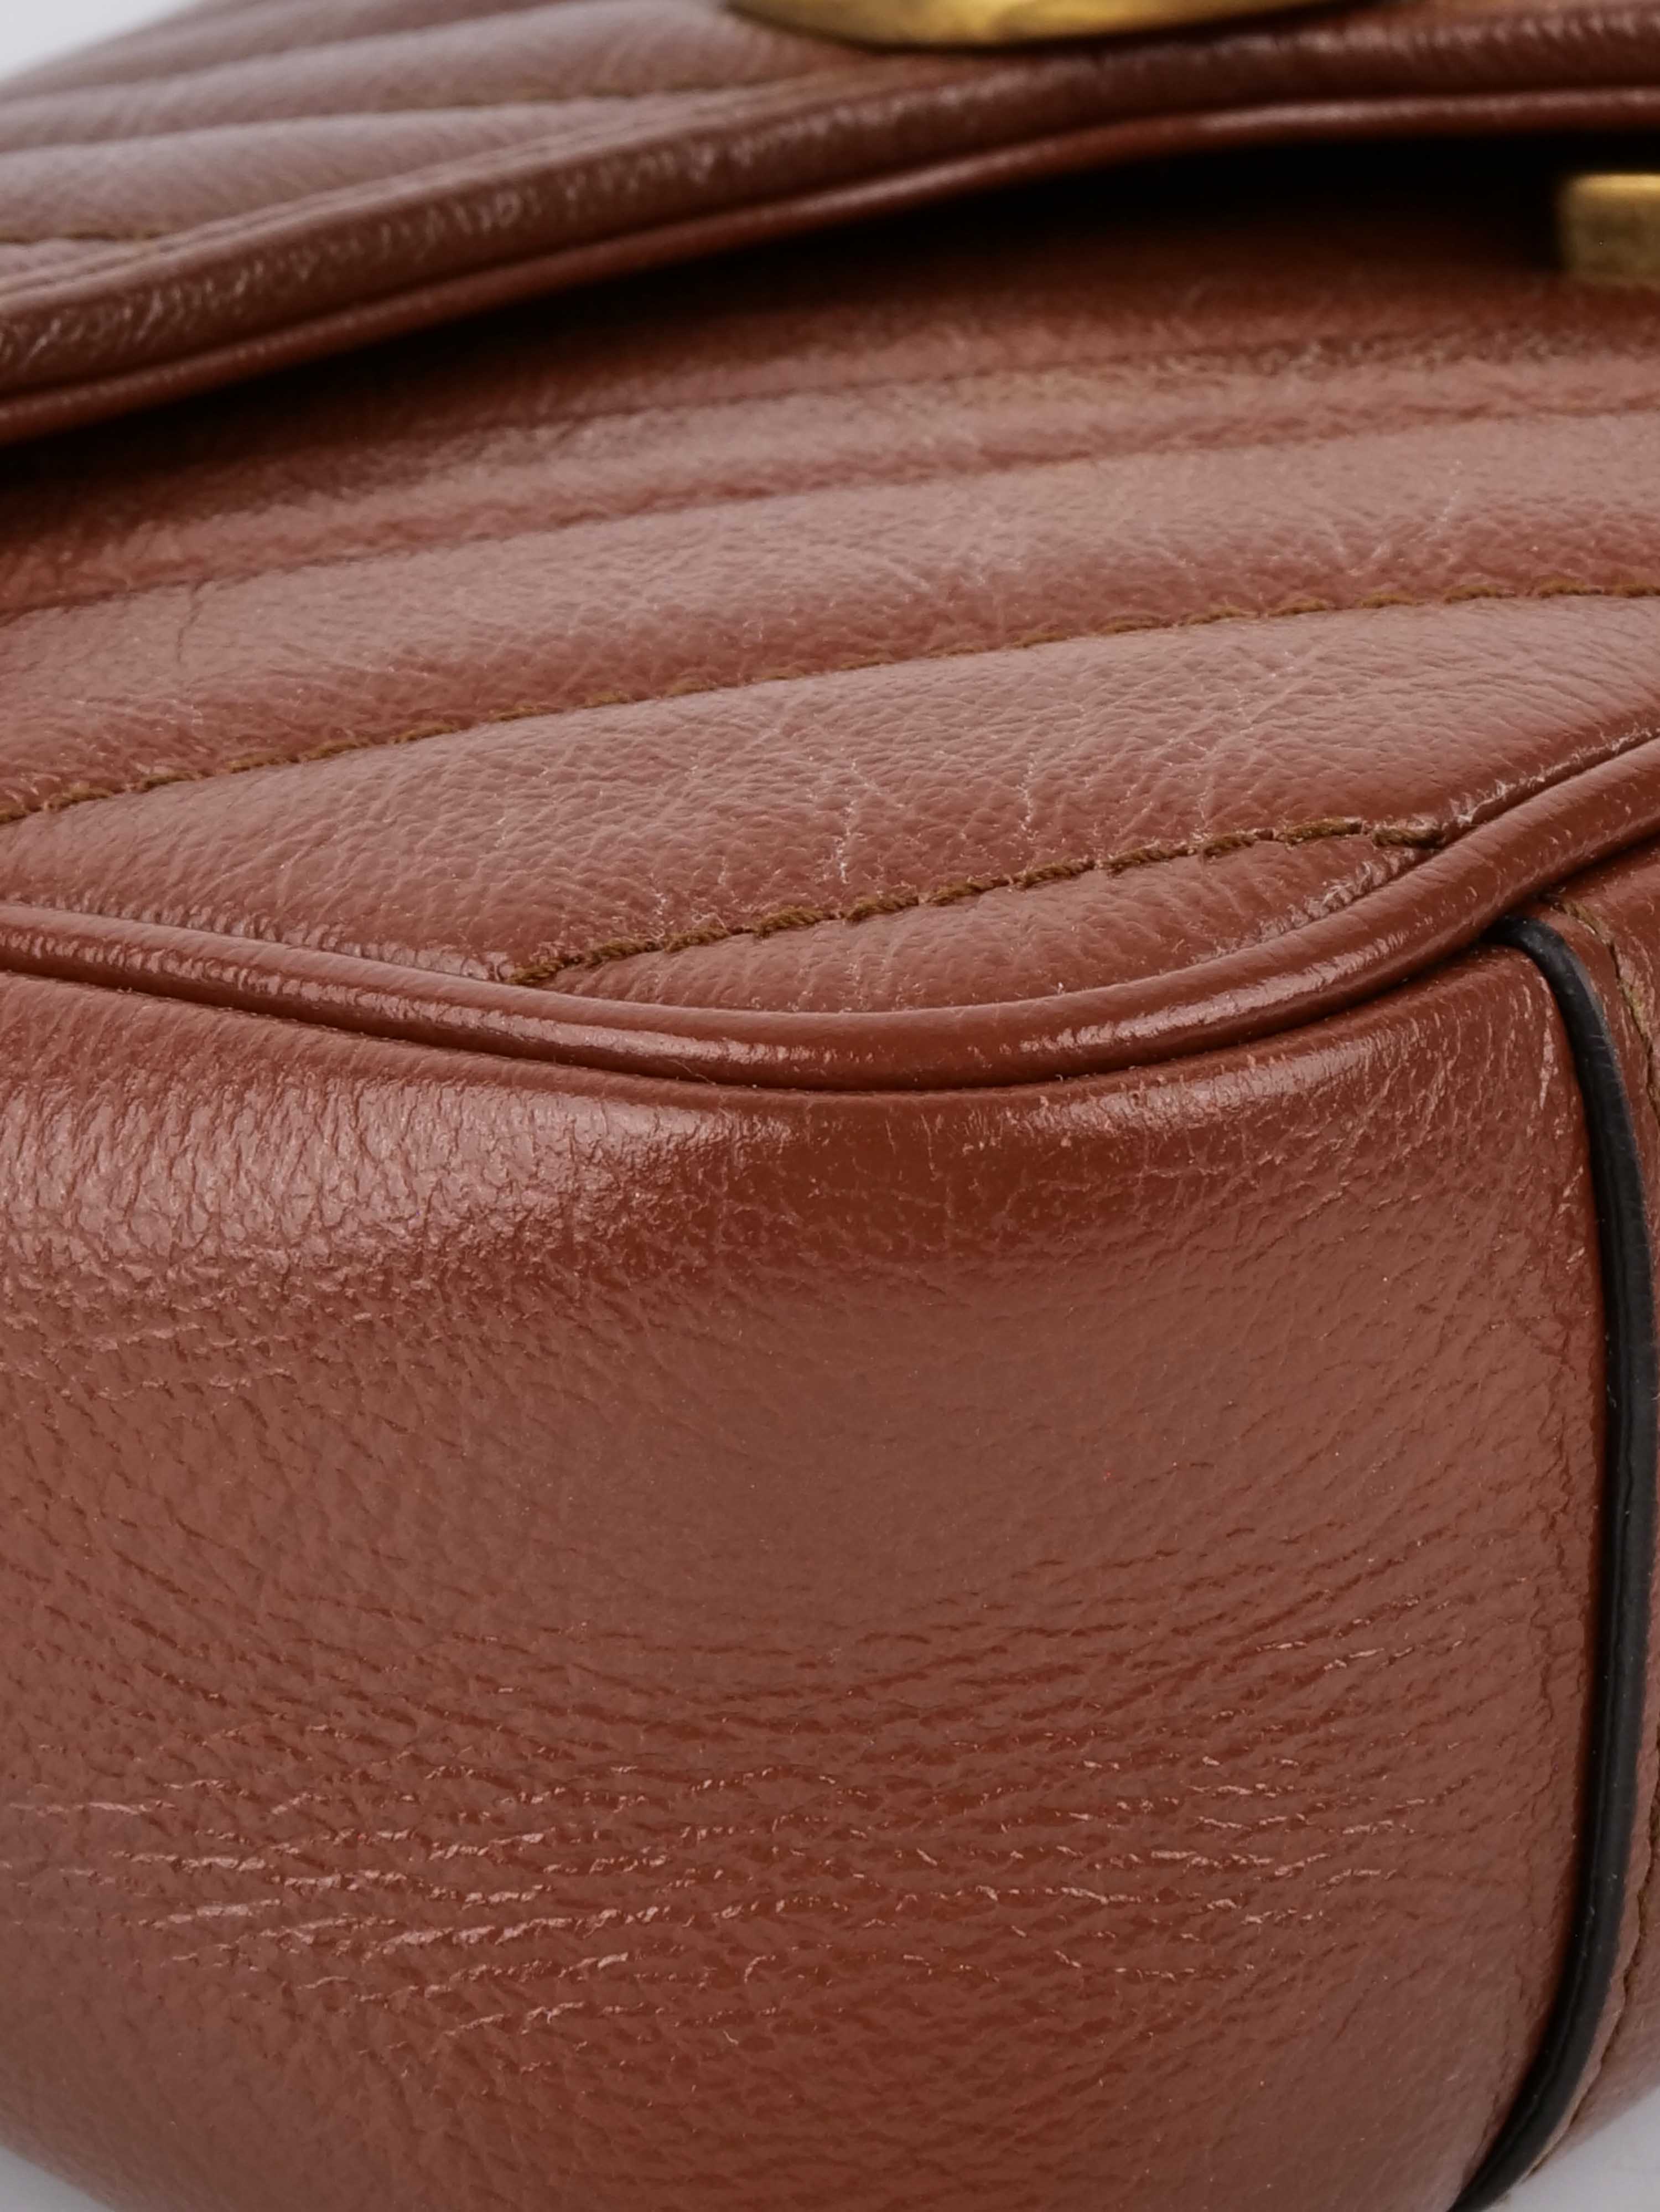 Gucci Mini Marmont Caramel Shoulder Bag.